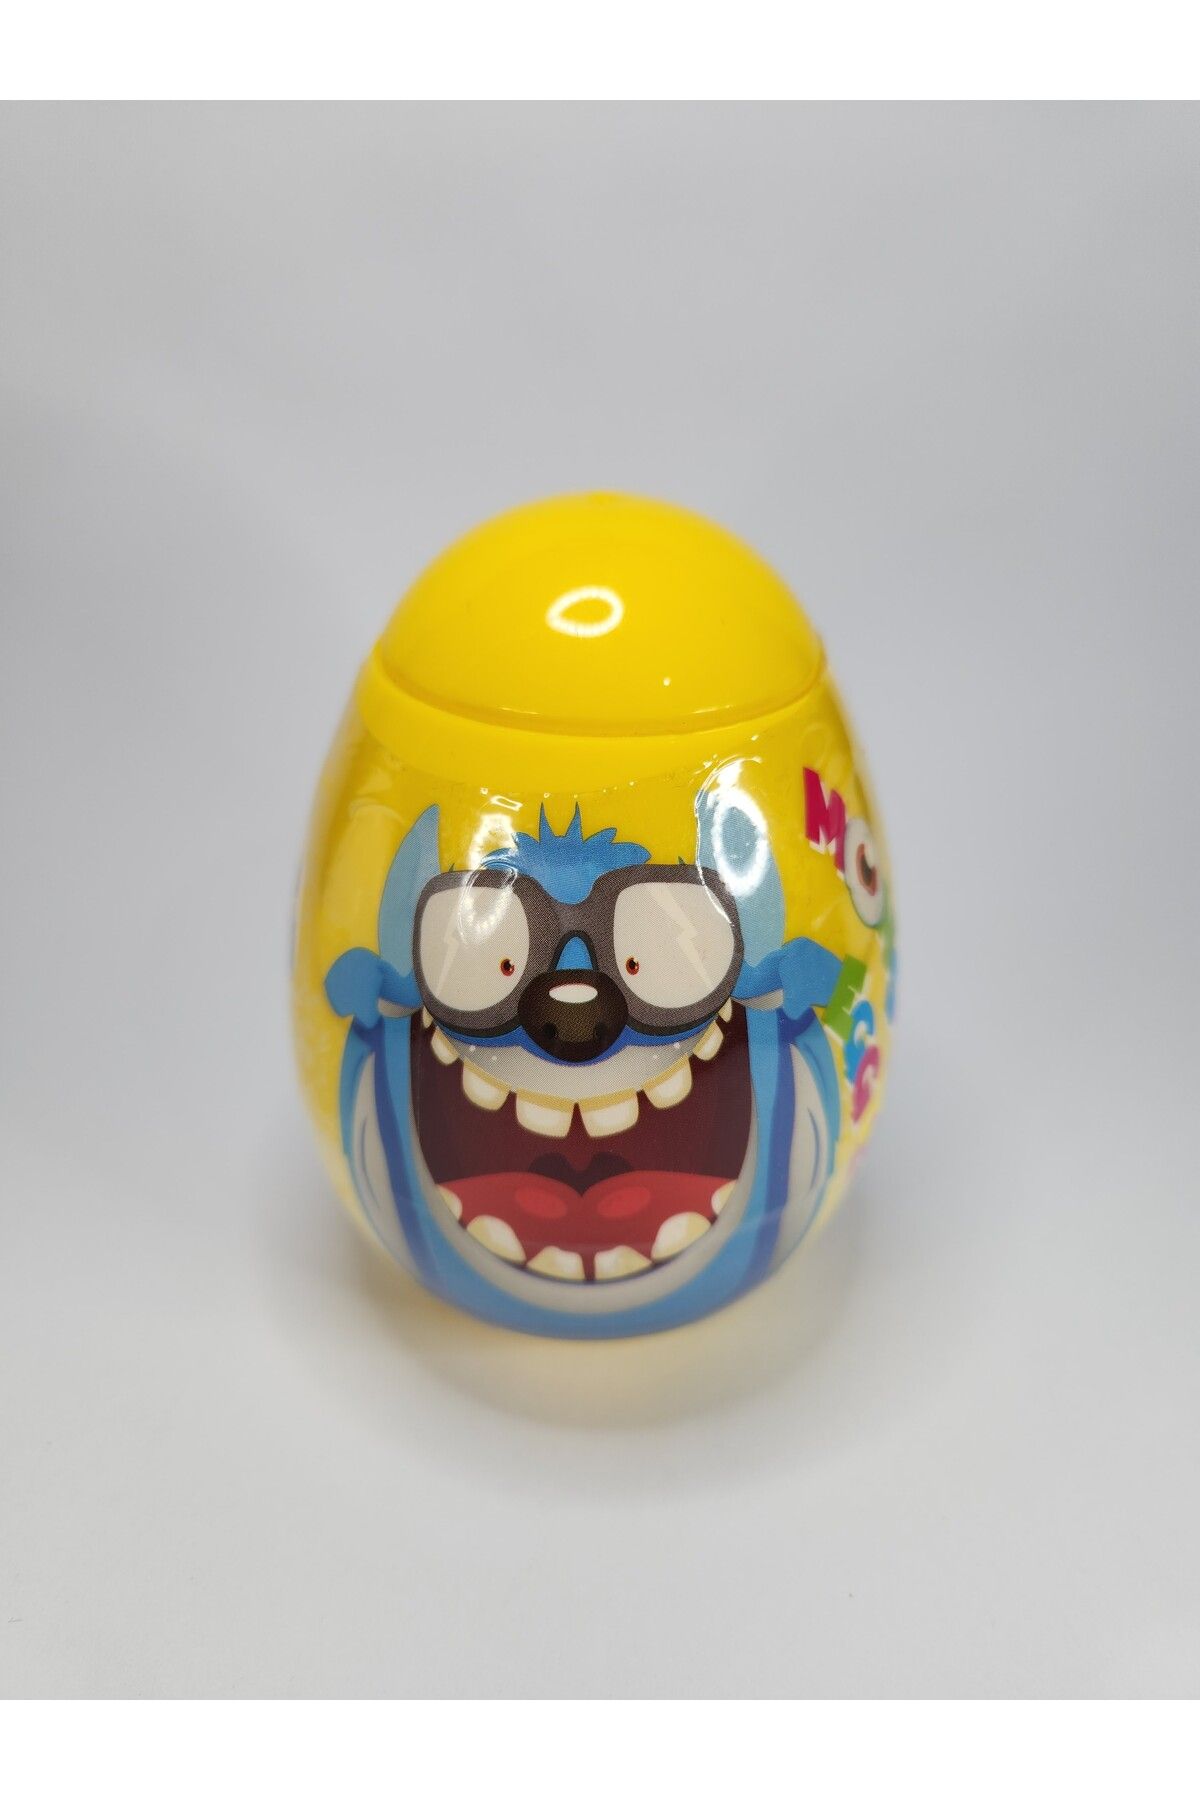 Dear Aksesuar Çocuklar İçin Eğlence Dolu Sürpriz Yumurta - Oyuncak Garantili! 11cm Boyutunda